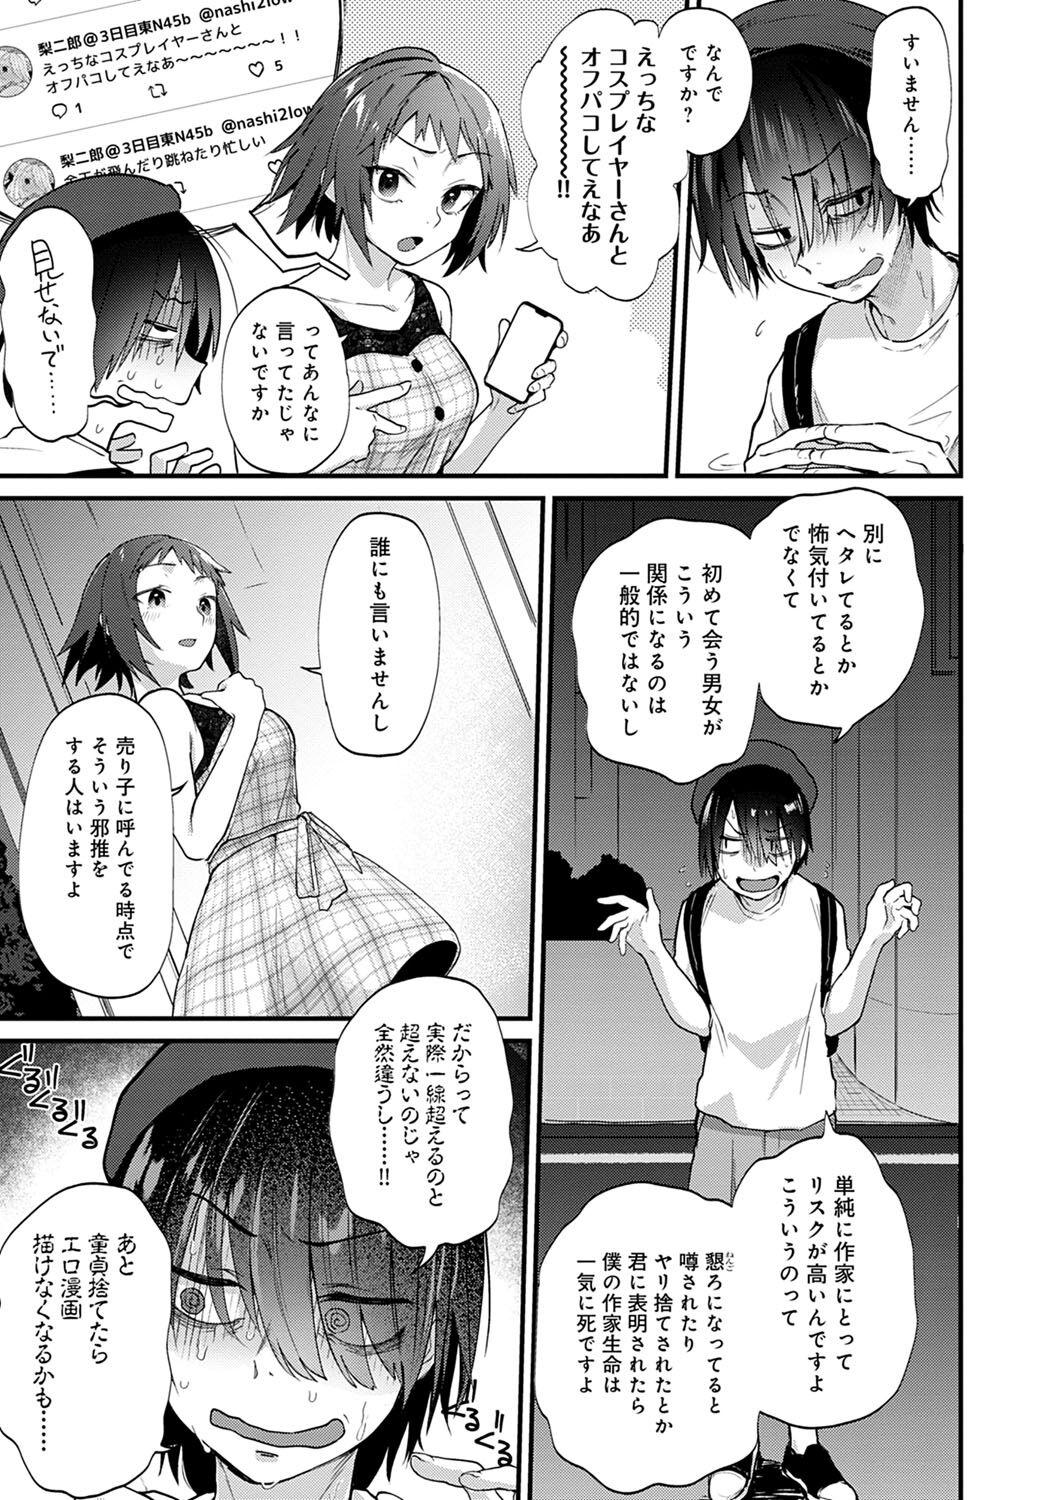 Rubbing Doujin Sakka wa Cosplay Ecchi no Yume wo Miruka Granny - Page 6